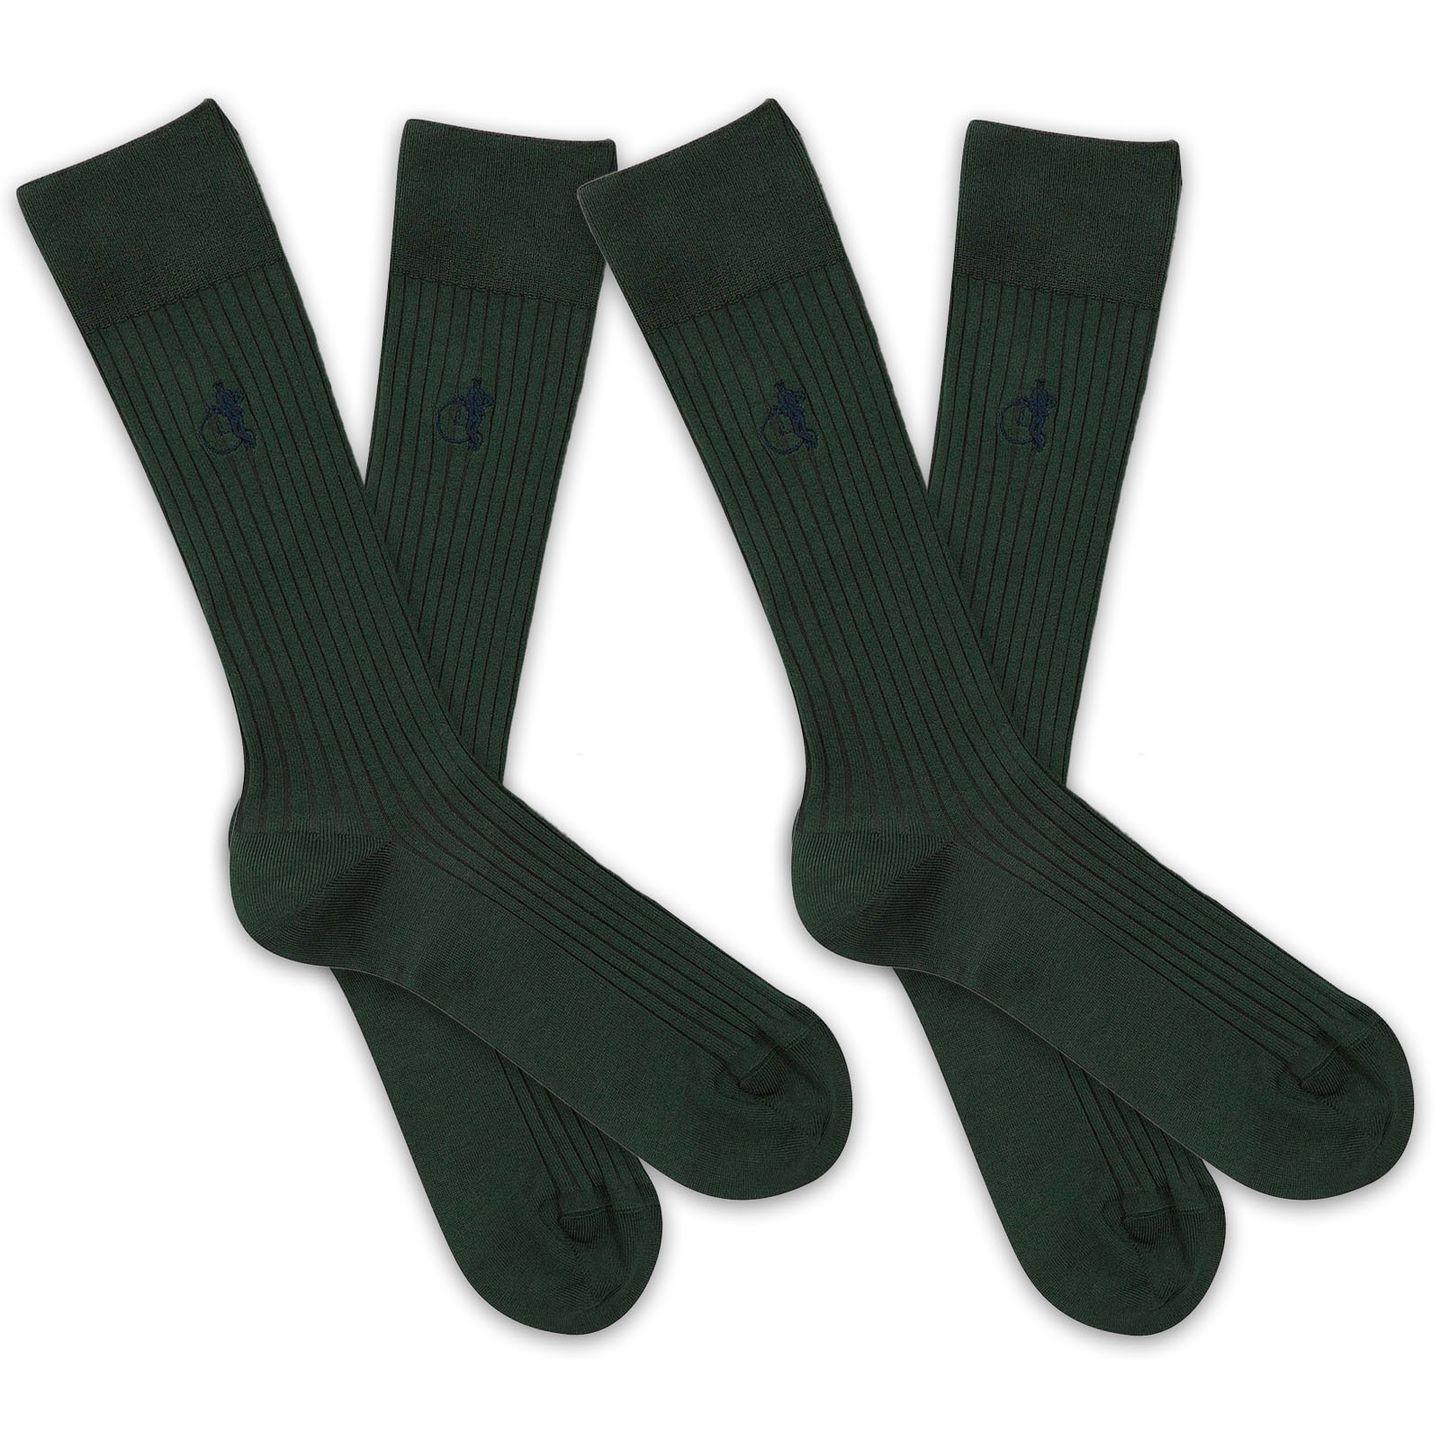 2 pairs of mens sartorial socks in simply racing green